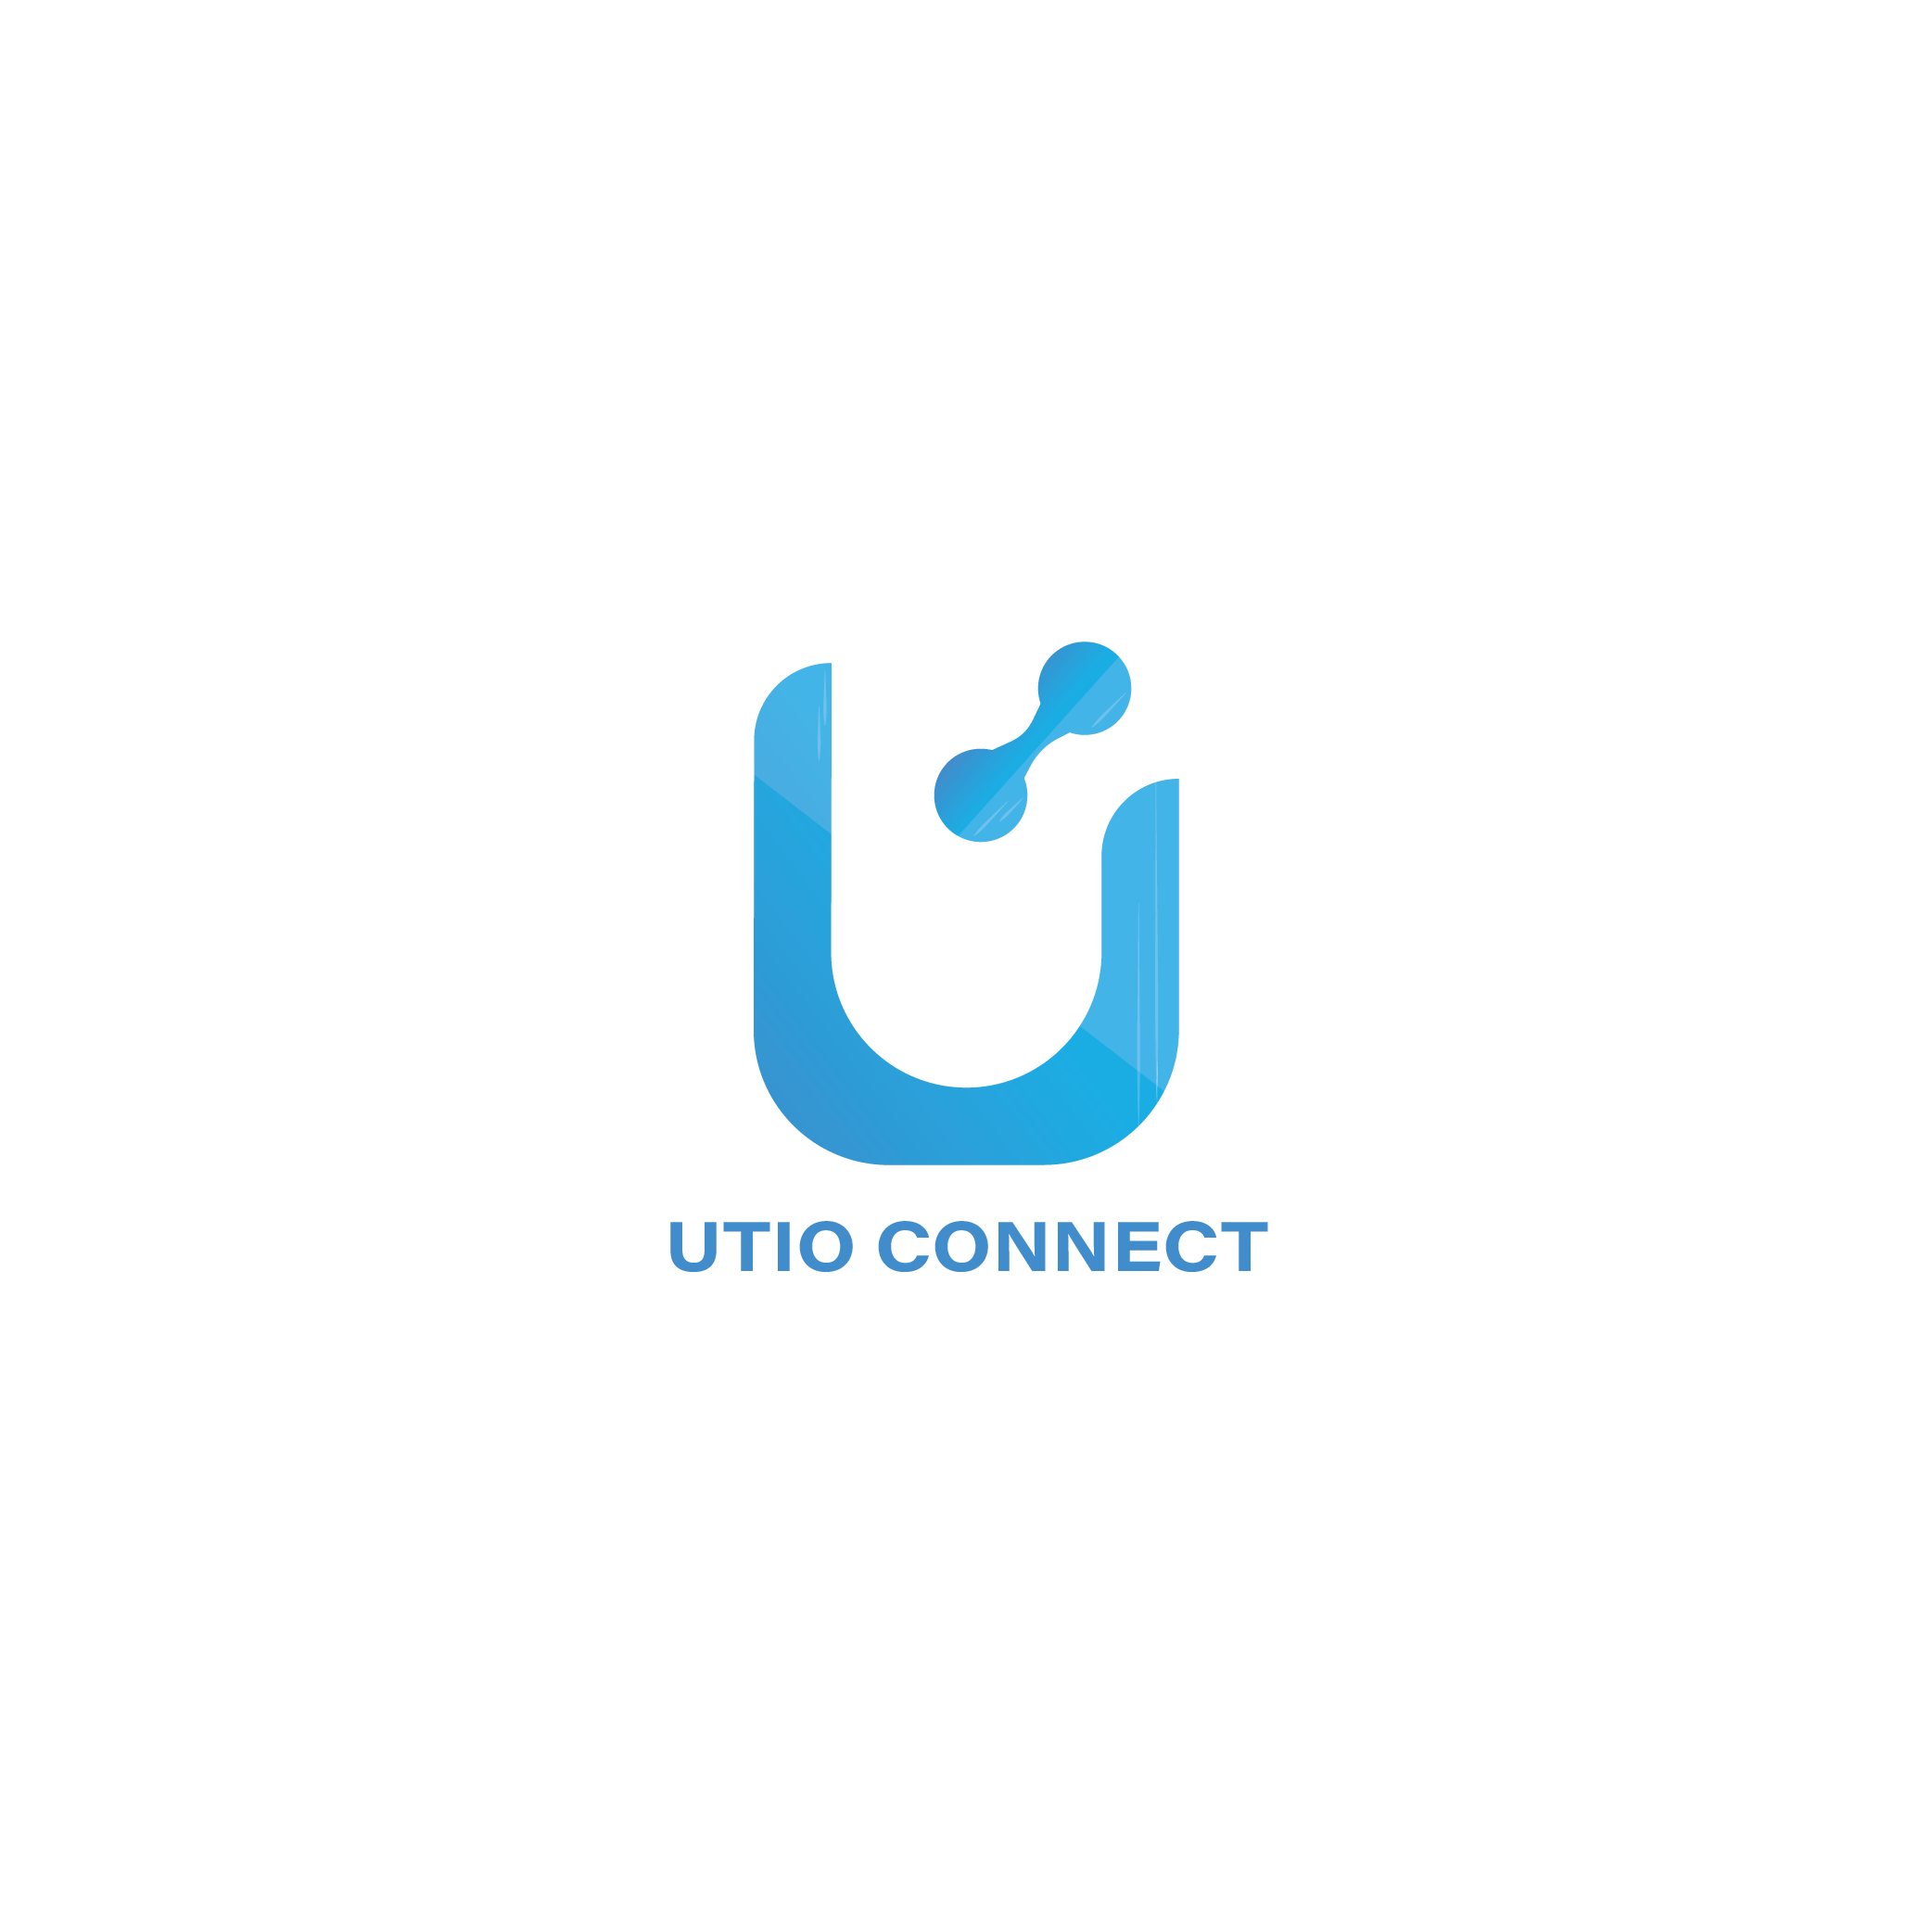 Utio Connect